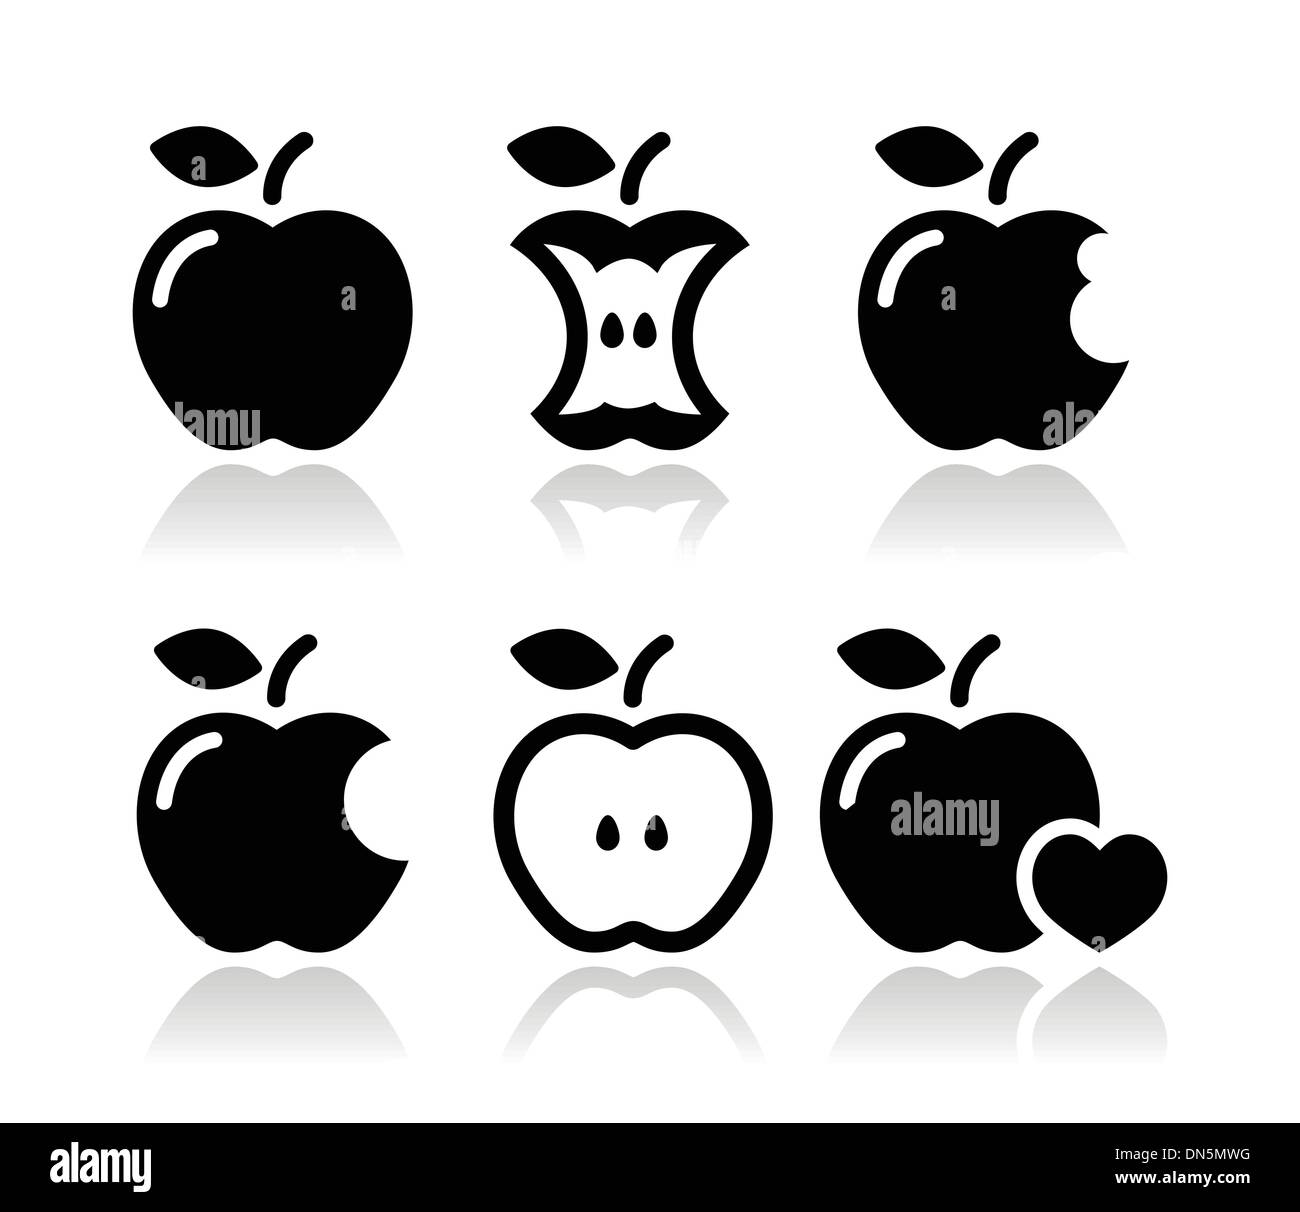 Apple, Apple core, picchiato, metà icone vettoriali Illustrazione Vettoriale